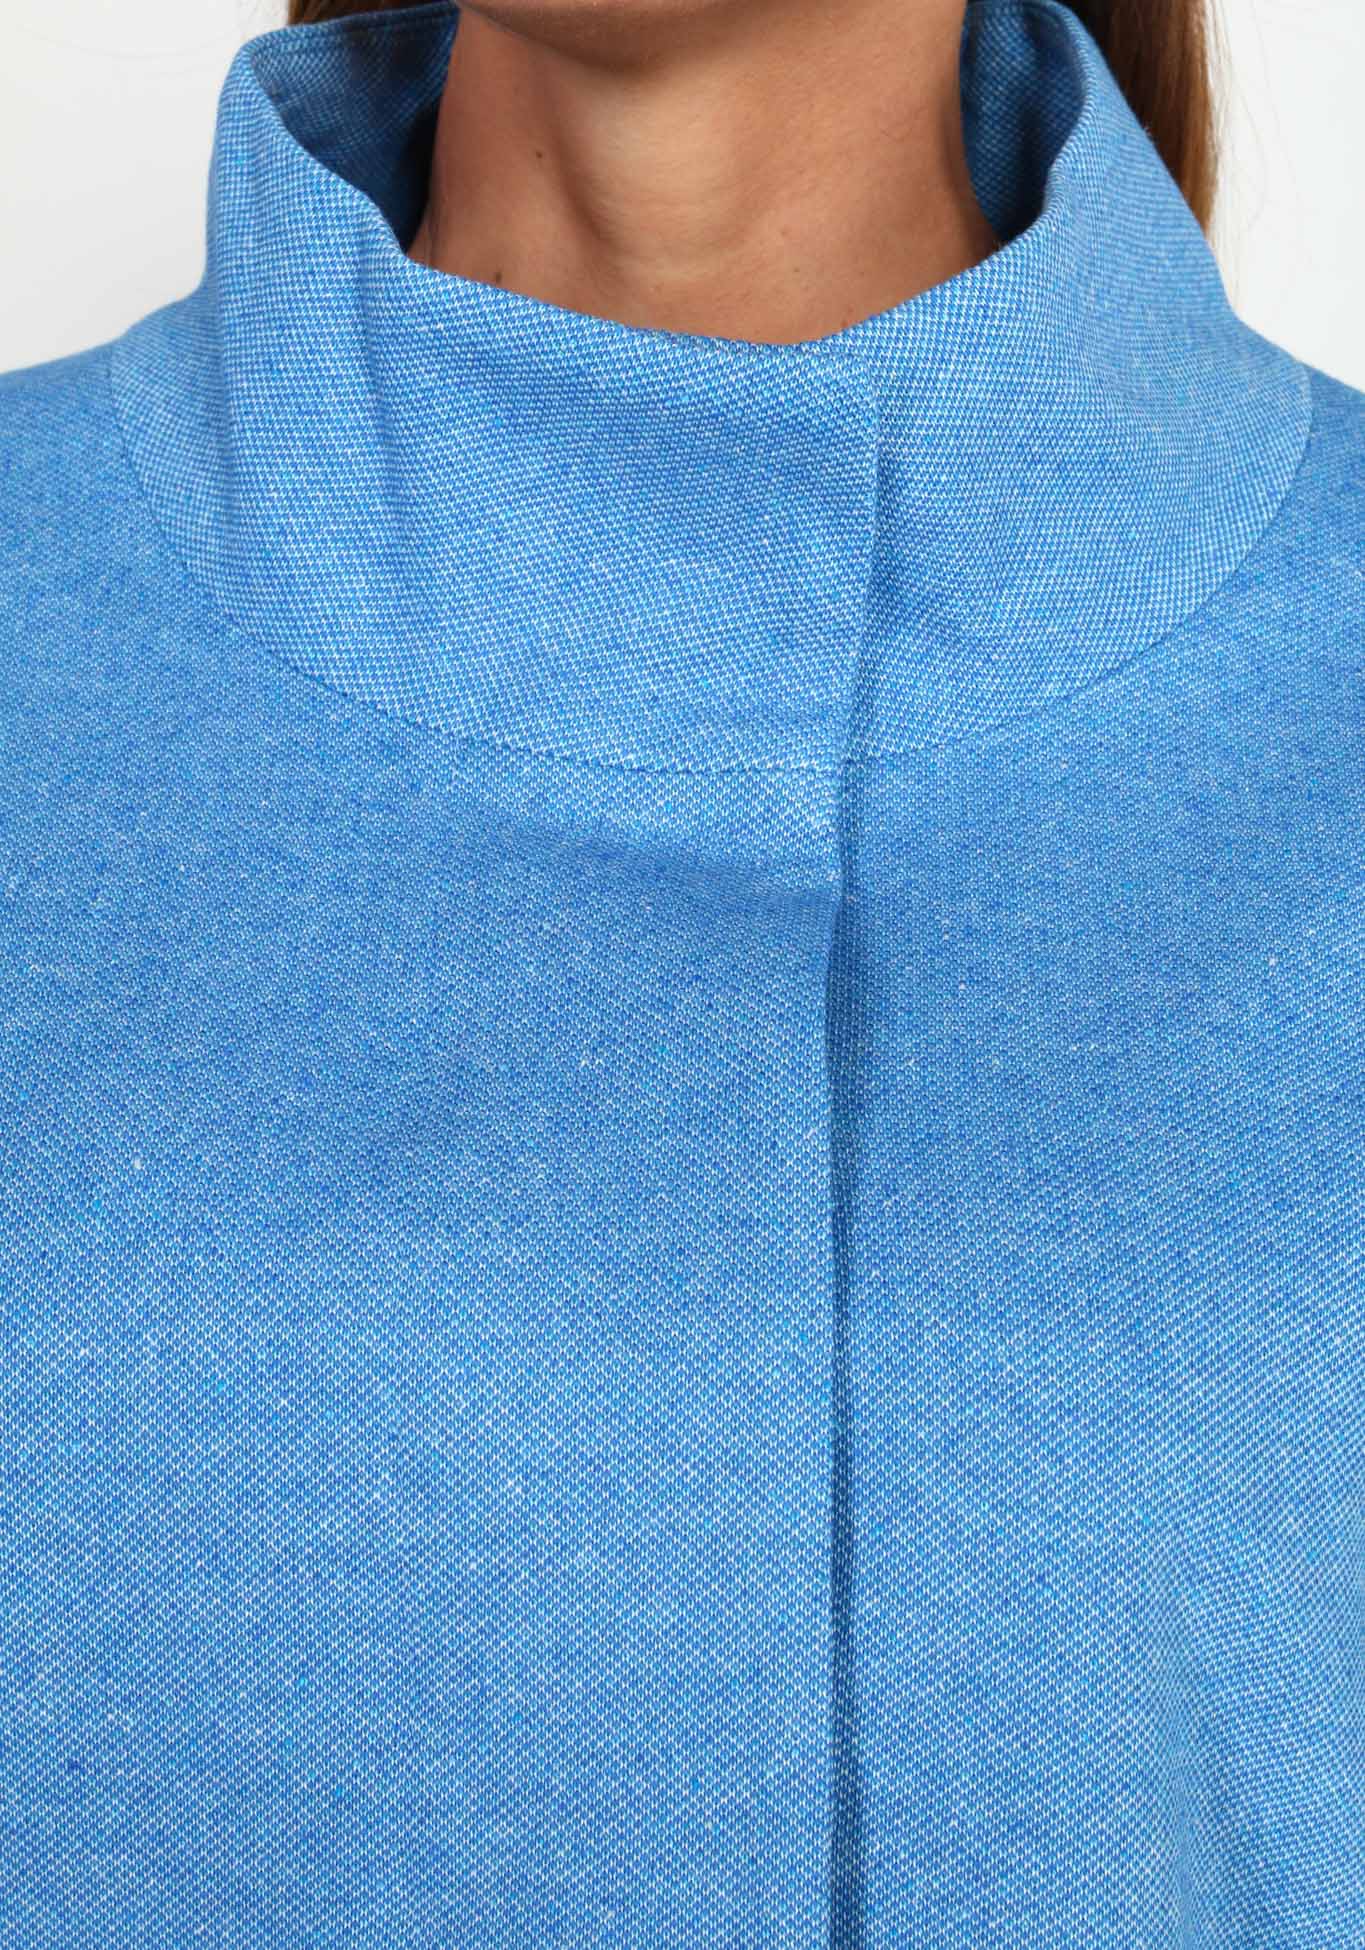 Пальто облегченное с воротником-стойкой Новое Время, размер 48, цвет синий укороченная модель - фото 7